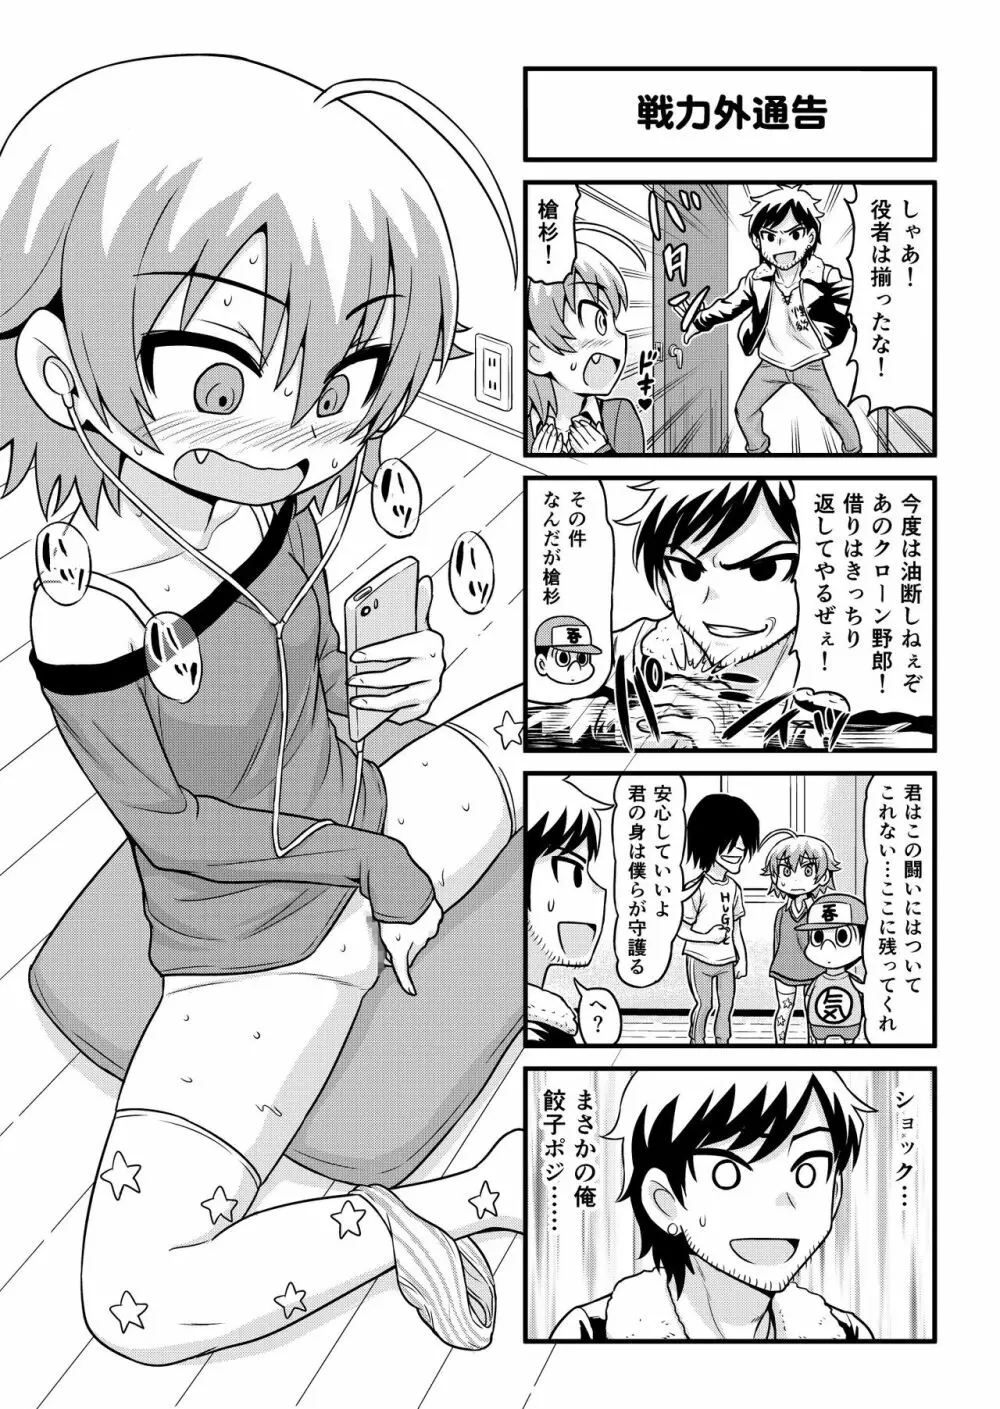 のんきBOY 1-48 - page224